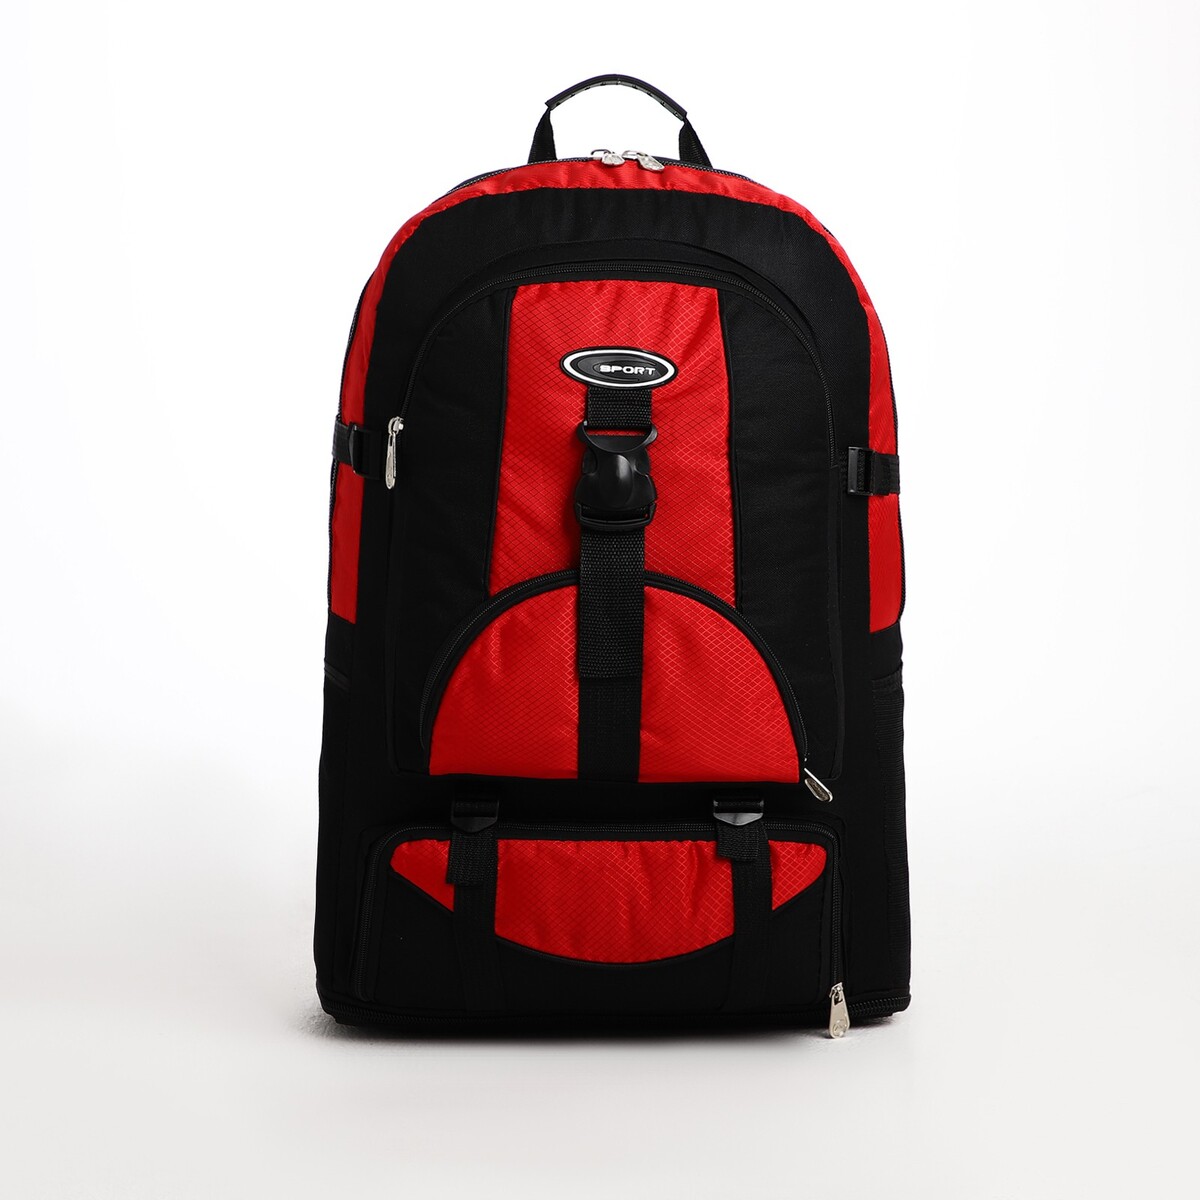 Рюкзак туристический на молнии, 5 наружных карманов, цвет черный/красный рюкзак на молнии с увеличением 55л 5 наружных карманов